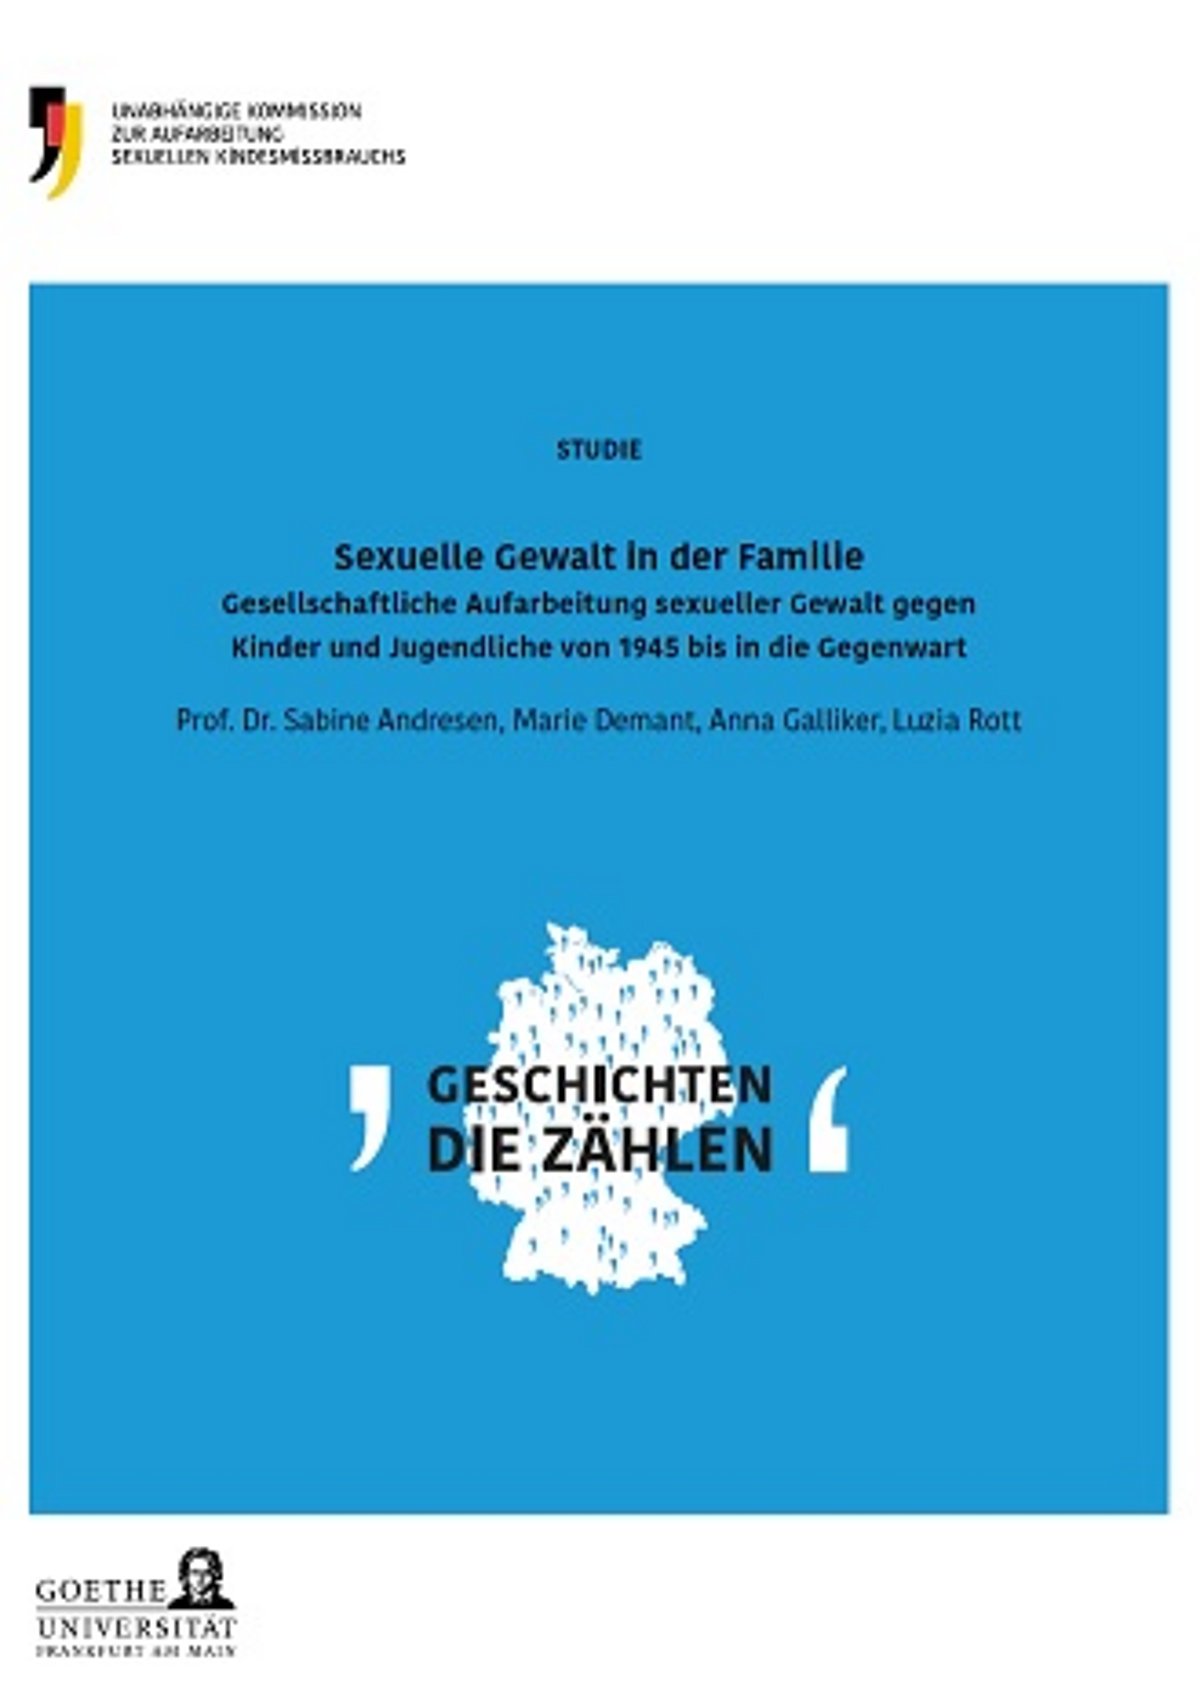 Blaues Cover der Studie mit Titelei und weißer Karte der Bundesrepublik Deutschland